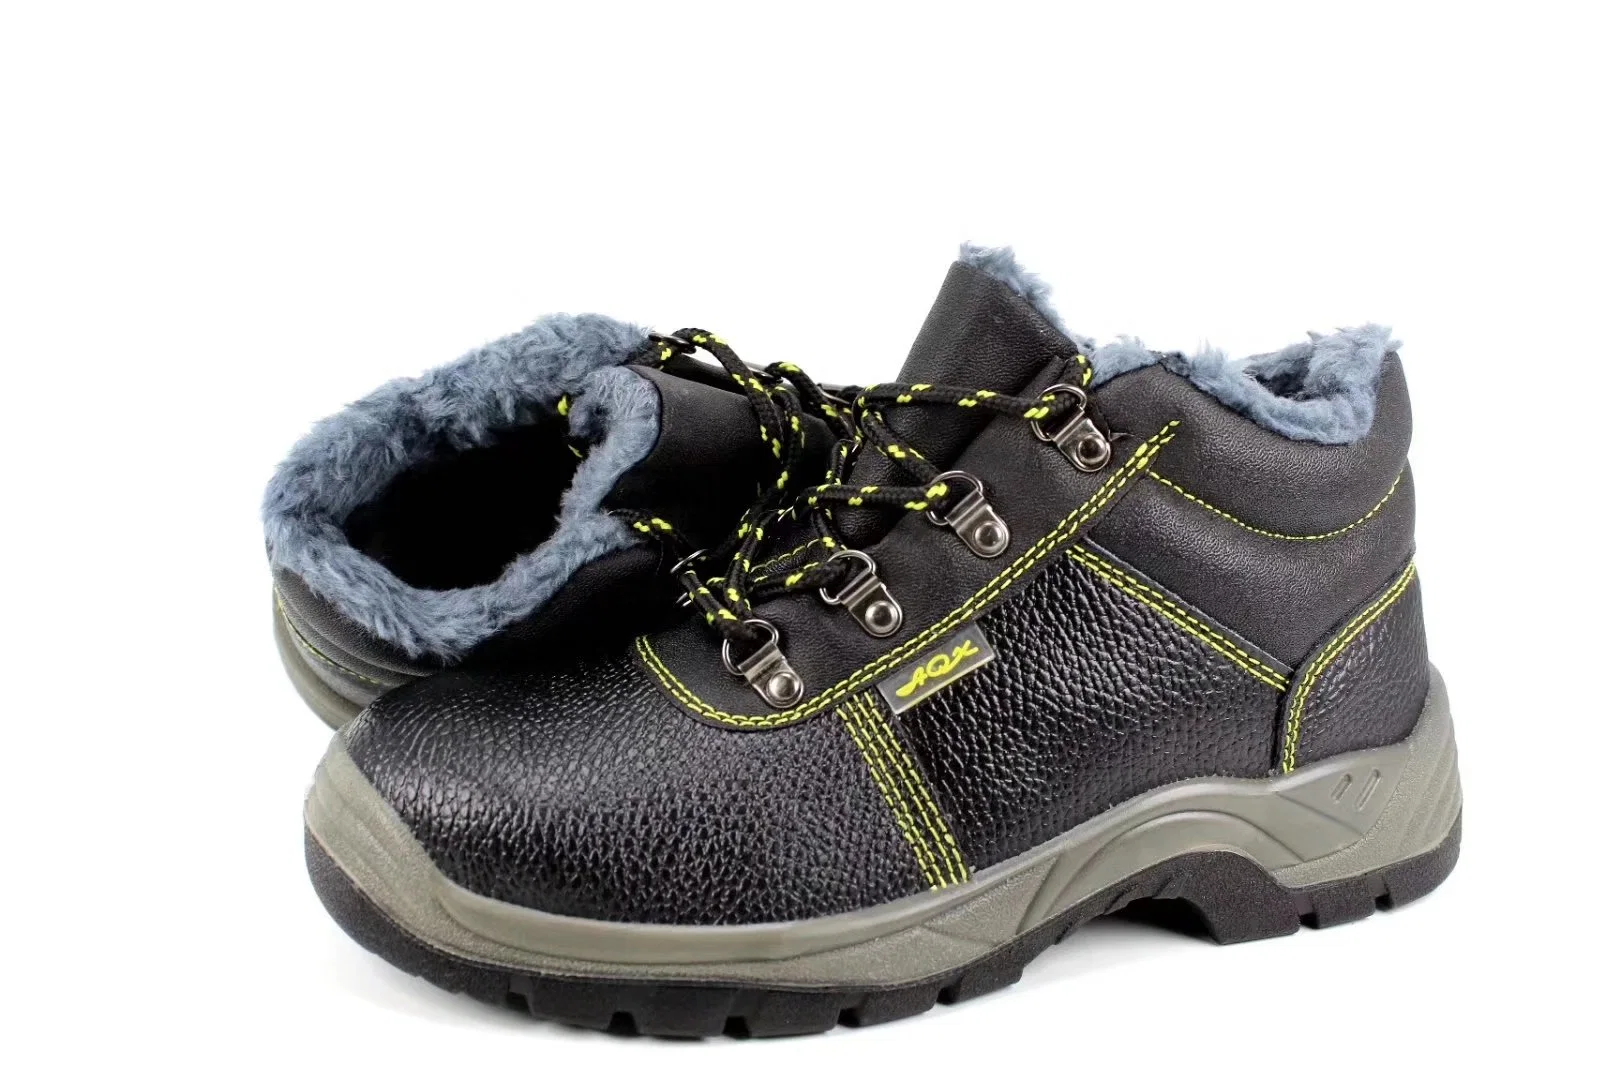 La moda invierno Calzado / Zapatos caliente/Puntera de acero Zapatos de seguridad